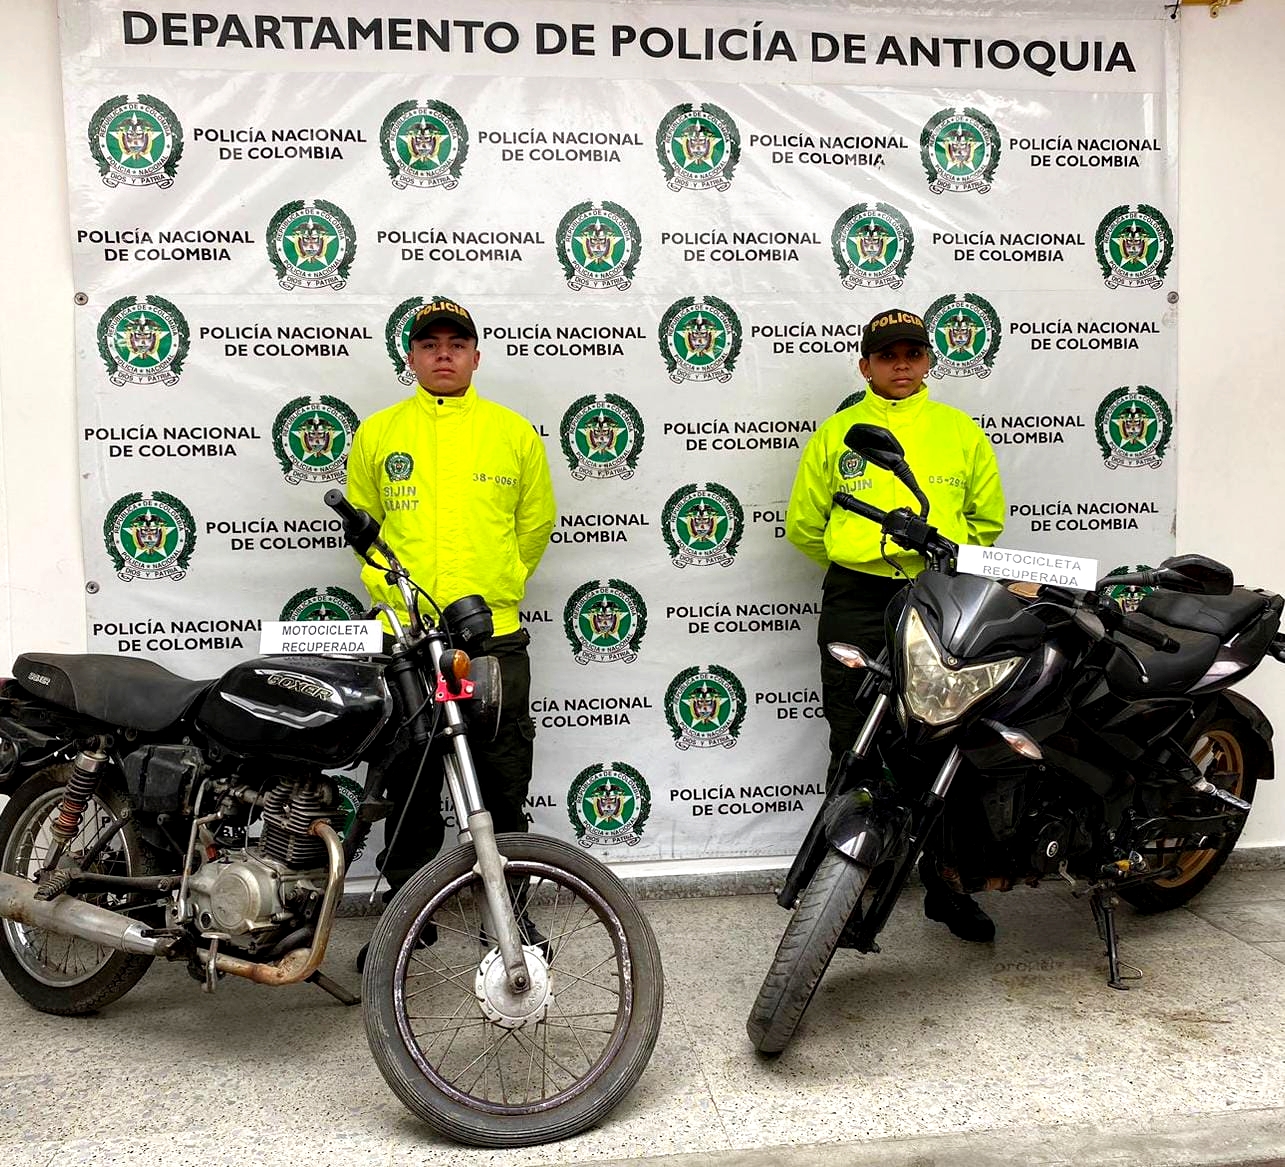 Motos robadas - La Ceja - Oriente - Como recuperar una moto robada - El Santuario - Rionegro